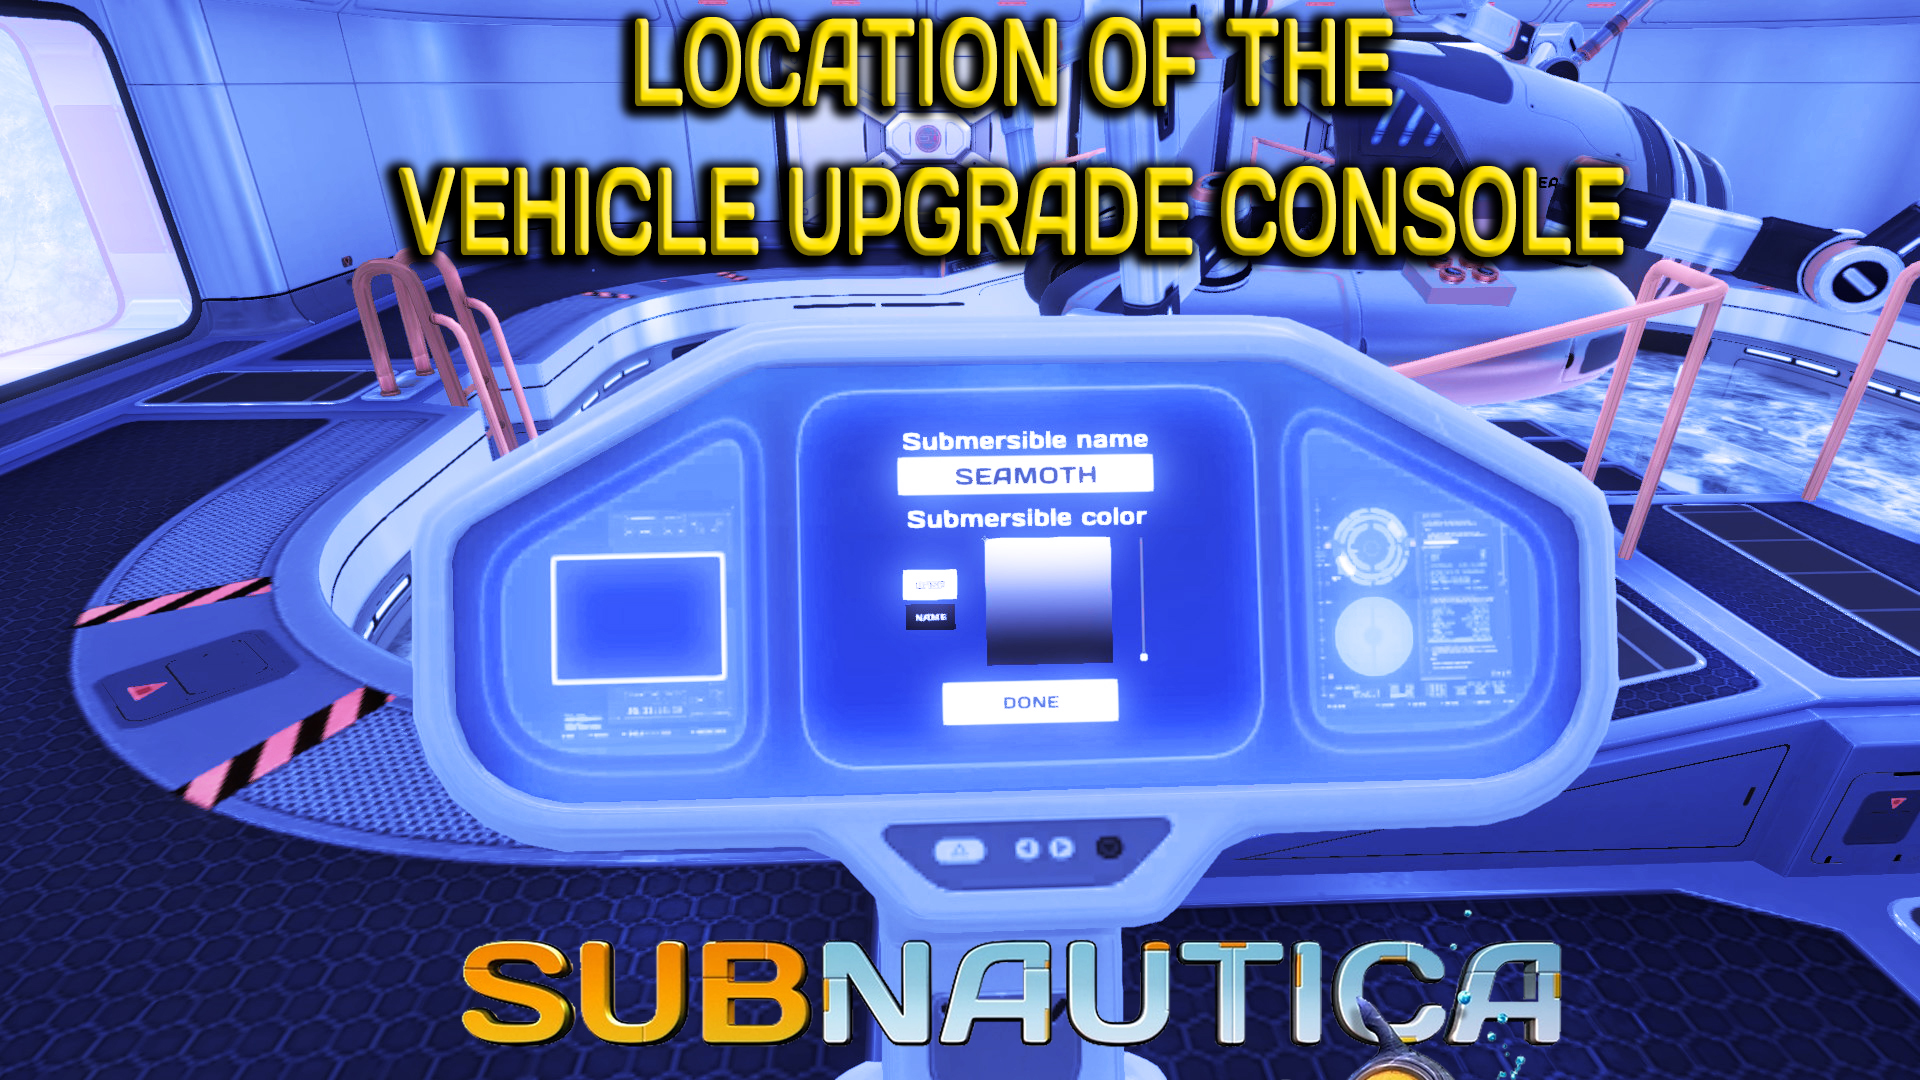 subnautica review